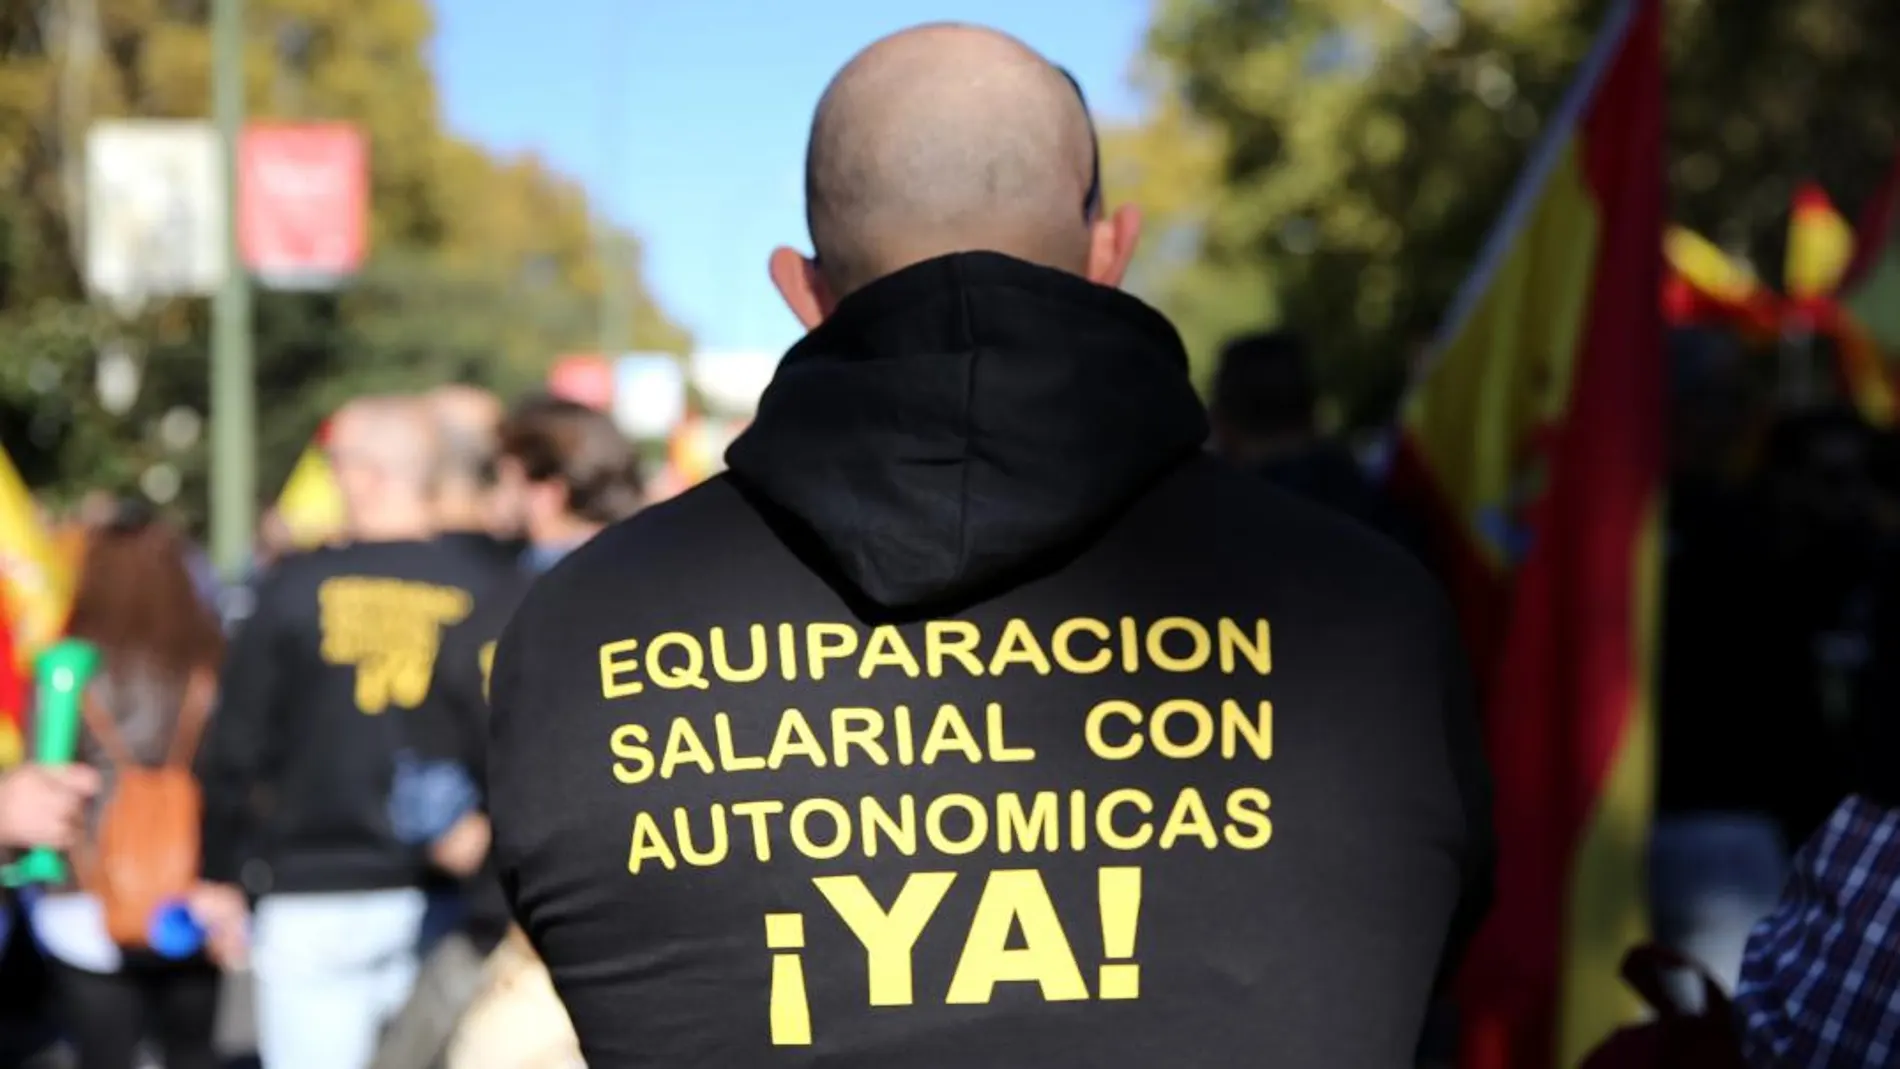 Manifestación a favor de la equiparación en Barcelona /C. Bejarano